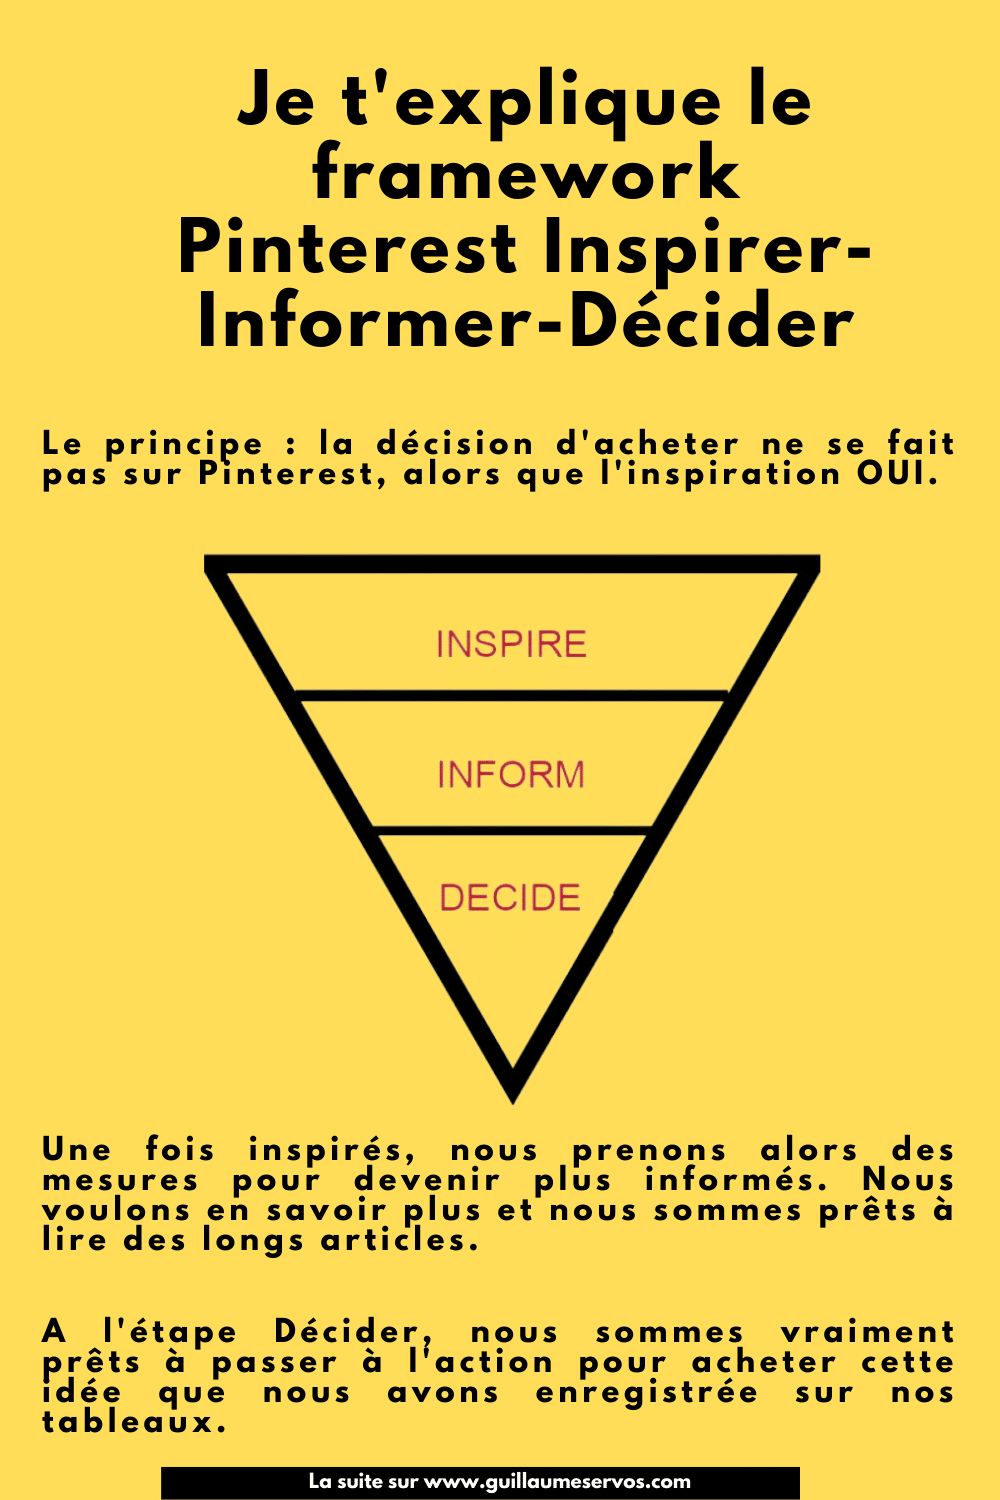 Framework : inspirer-Informer-Décider